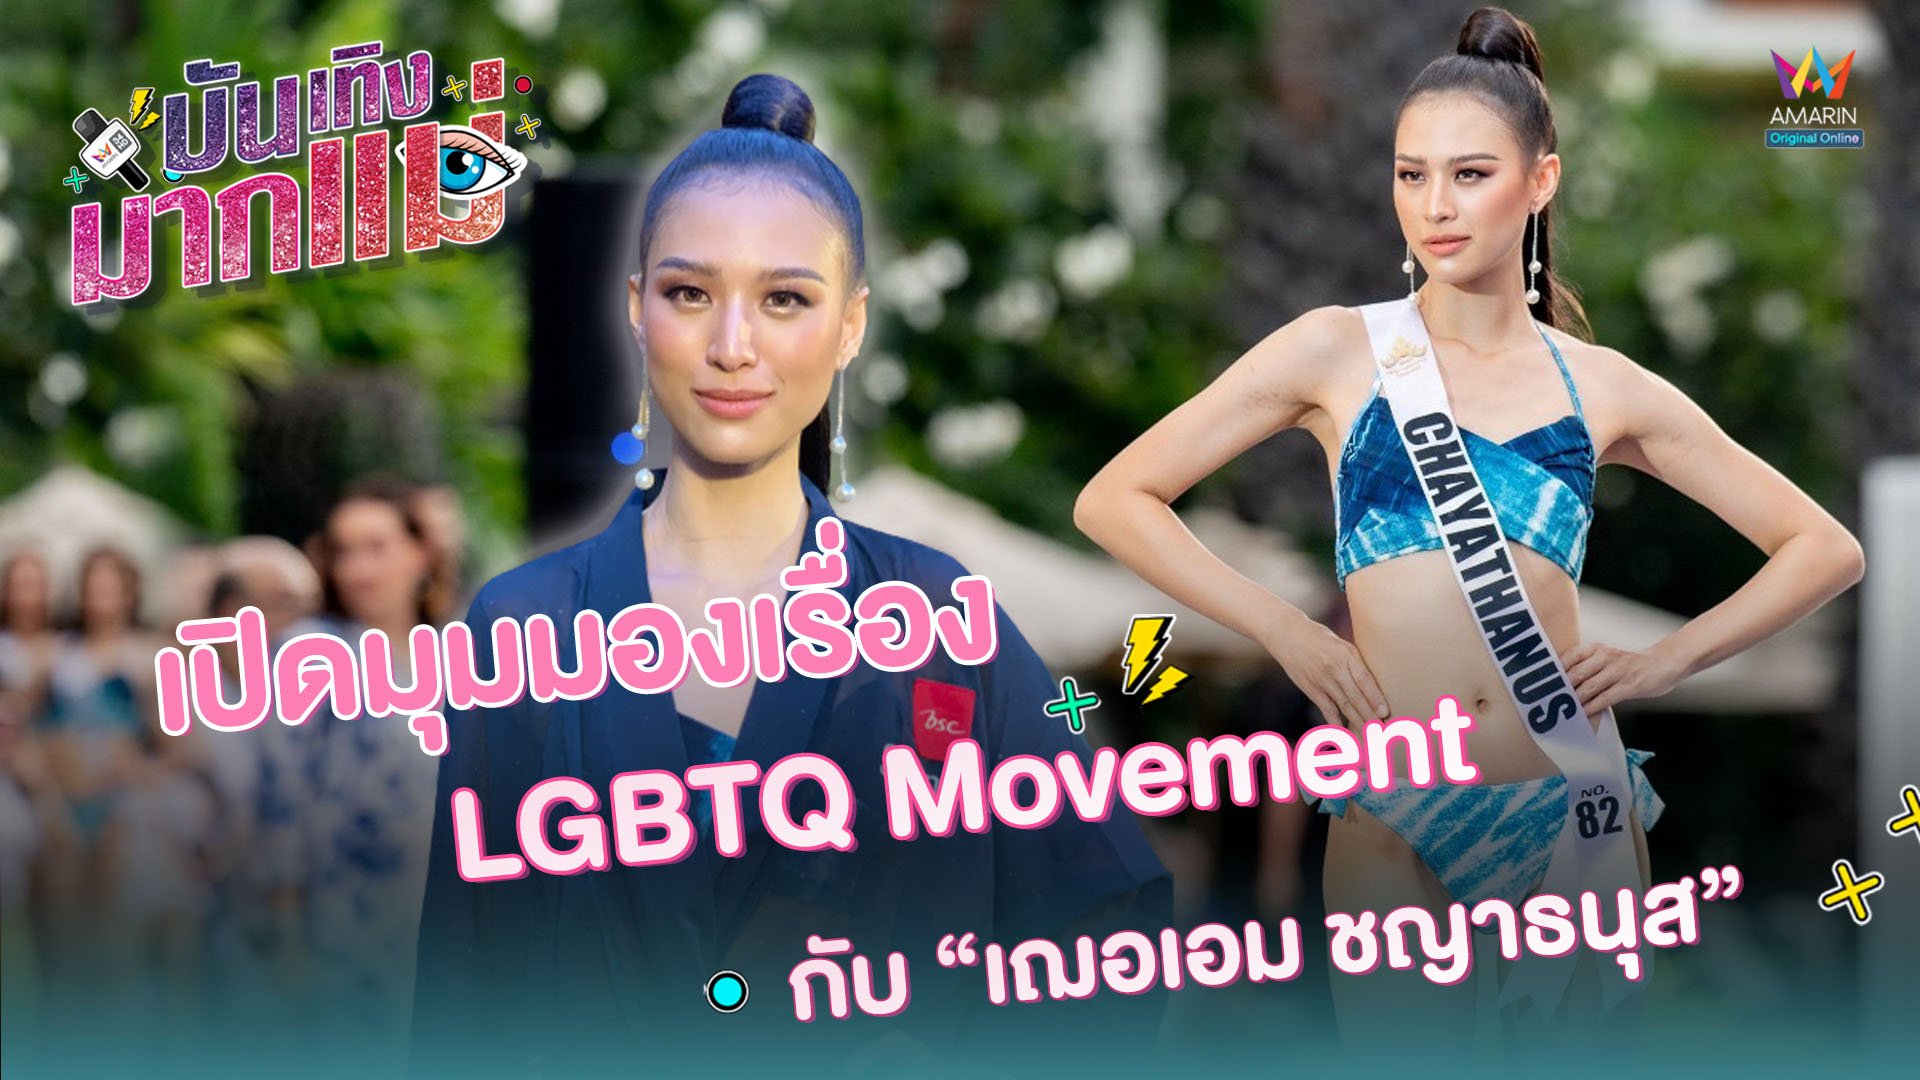 บันเทิงมากแม่ | EP.17 เปิดมุมมองเรื่อง LGBTQ Movement กับ 'เฌอเอม ชญาธนุส' | 25 ก.ย. 63 | AMARIN TVHD34